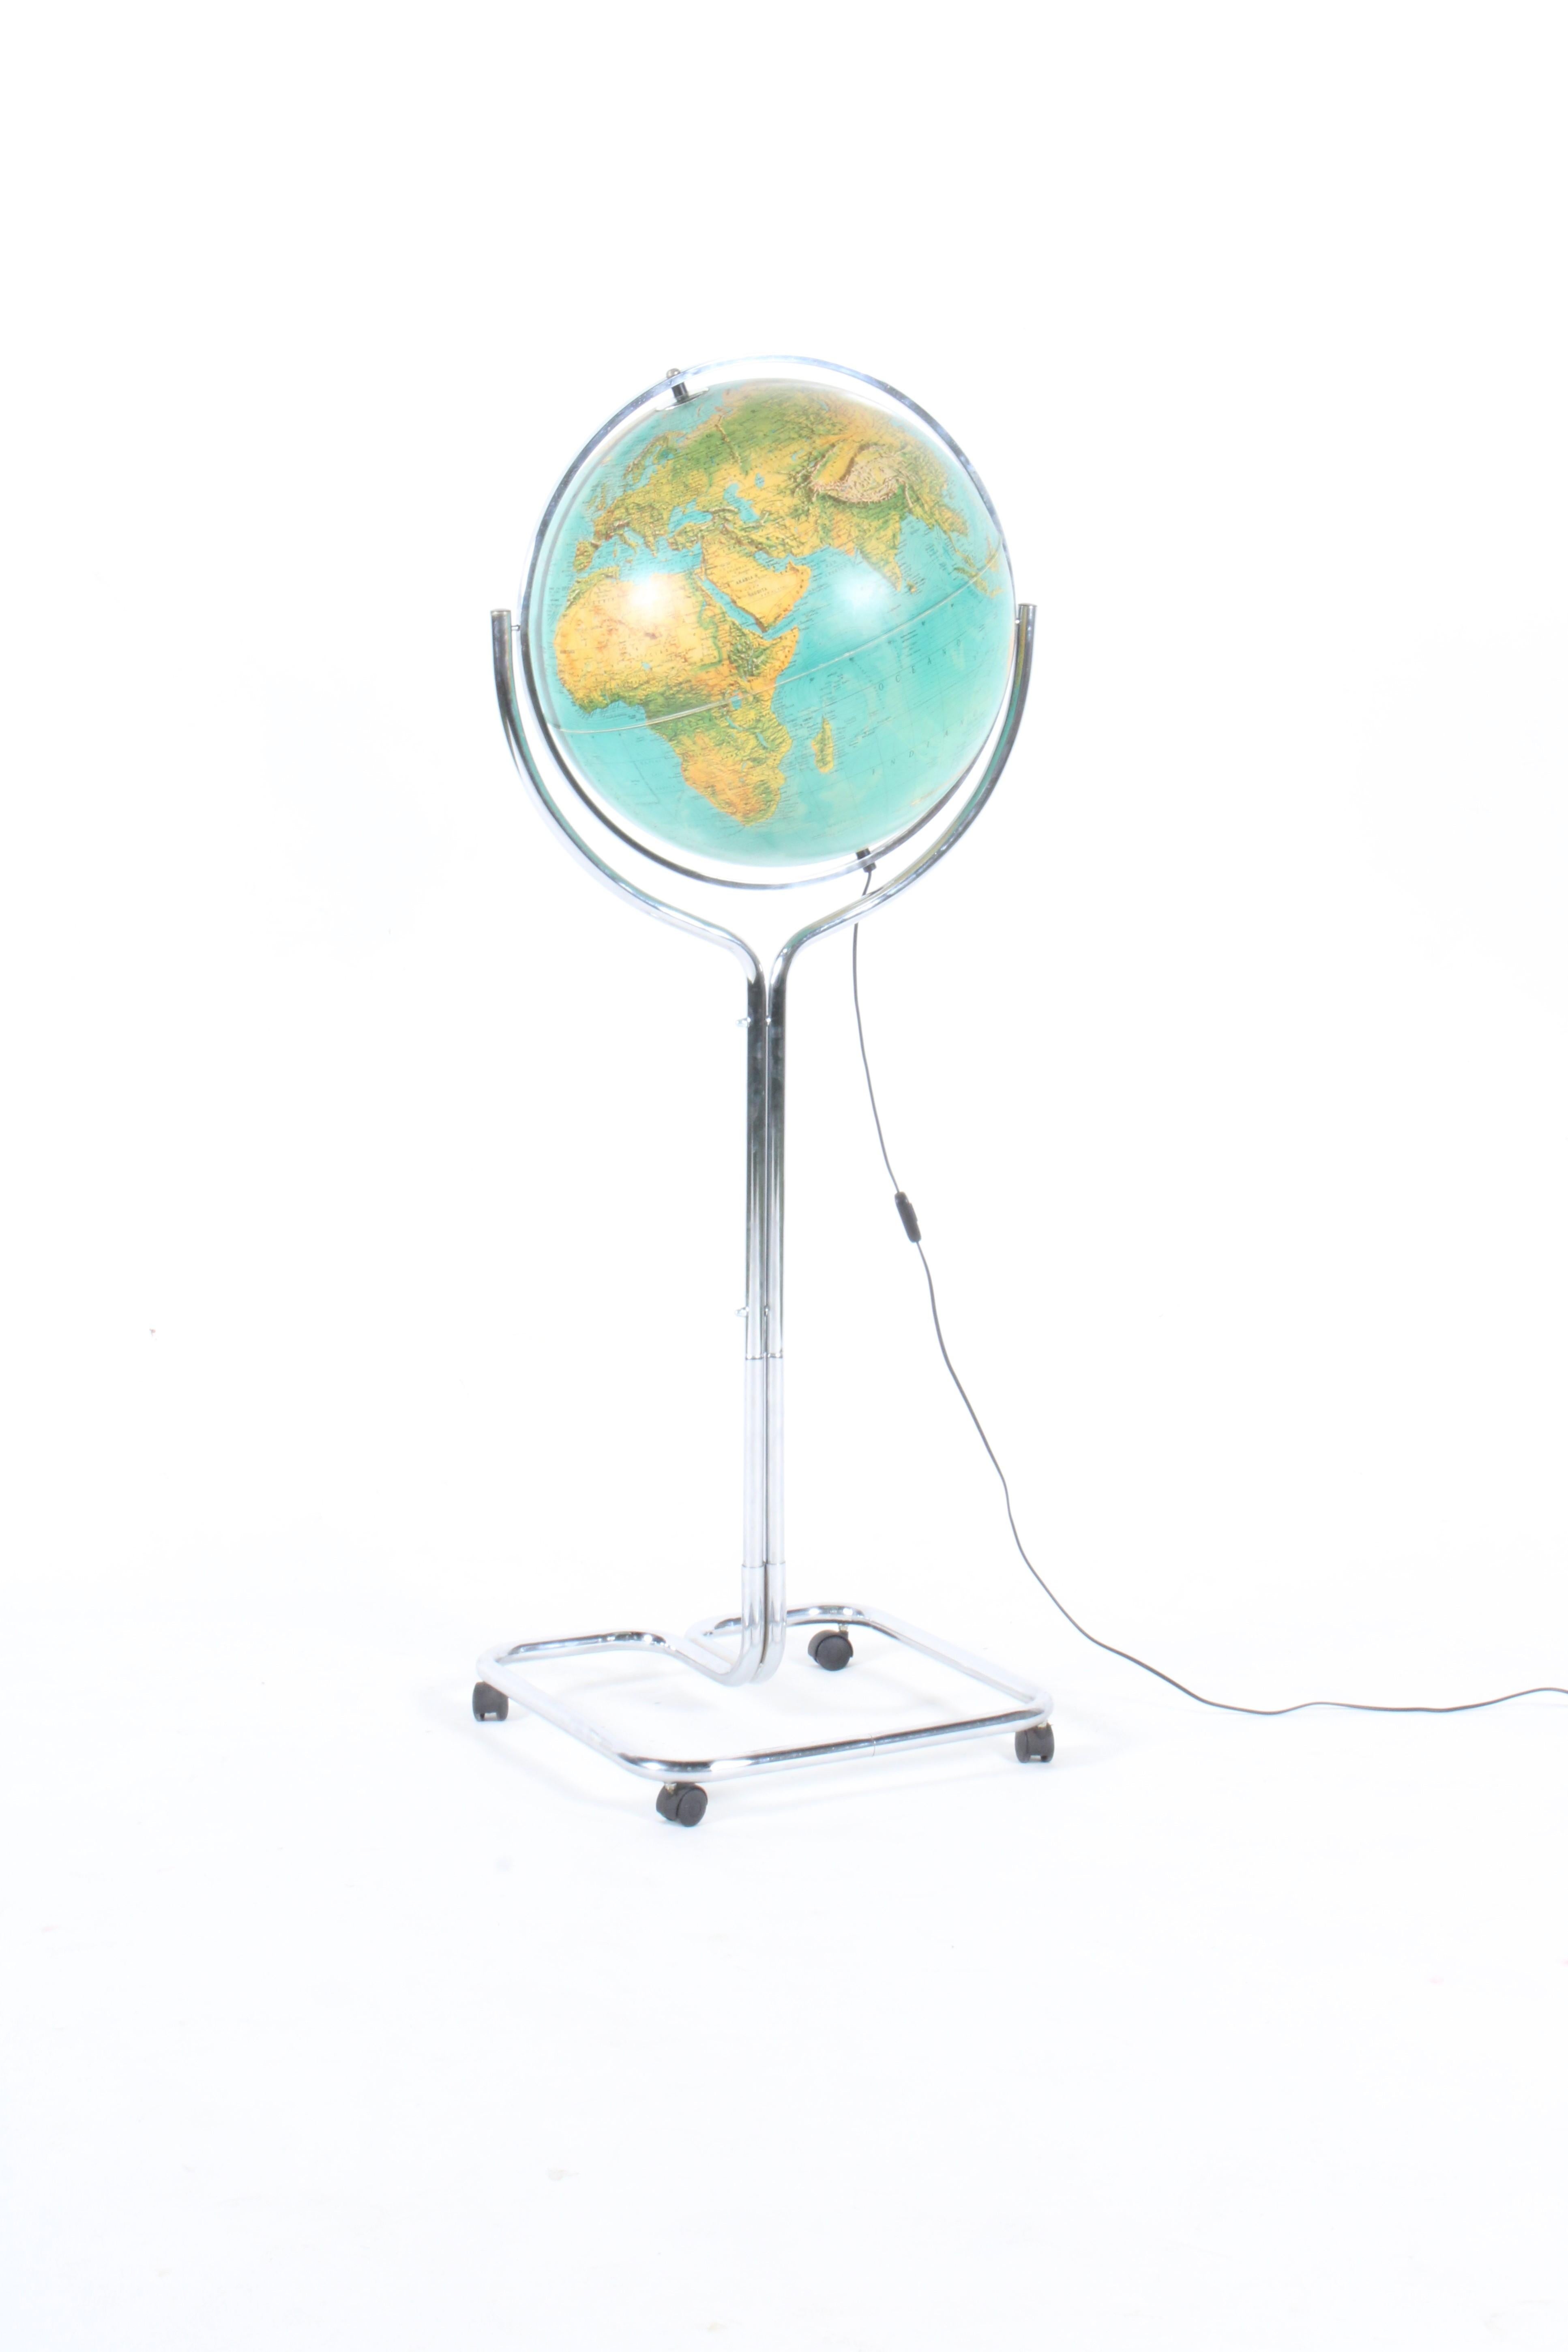 Superbe globe italien autoportant par Ricoscope Florence, livraison gratuite 10